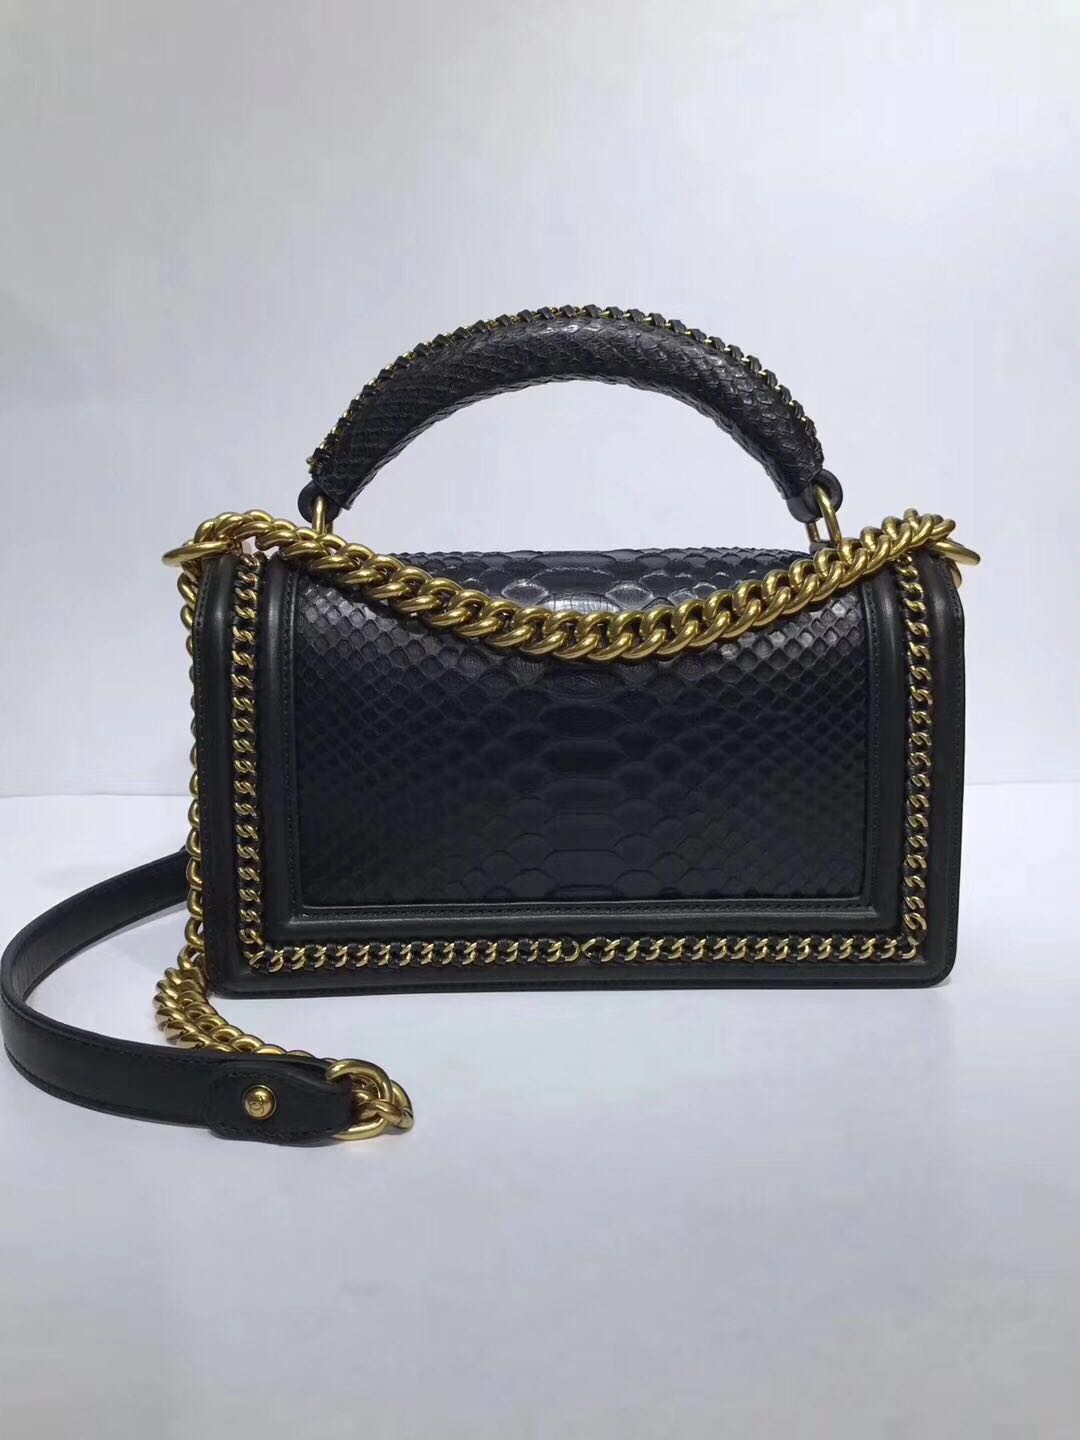 Boy Chanel Flap Shoulder Bag original Snake leather 67086 black